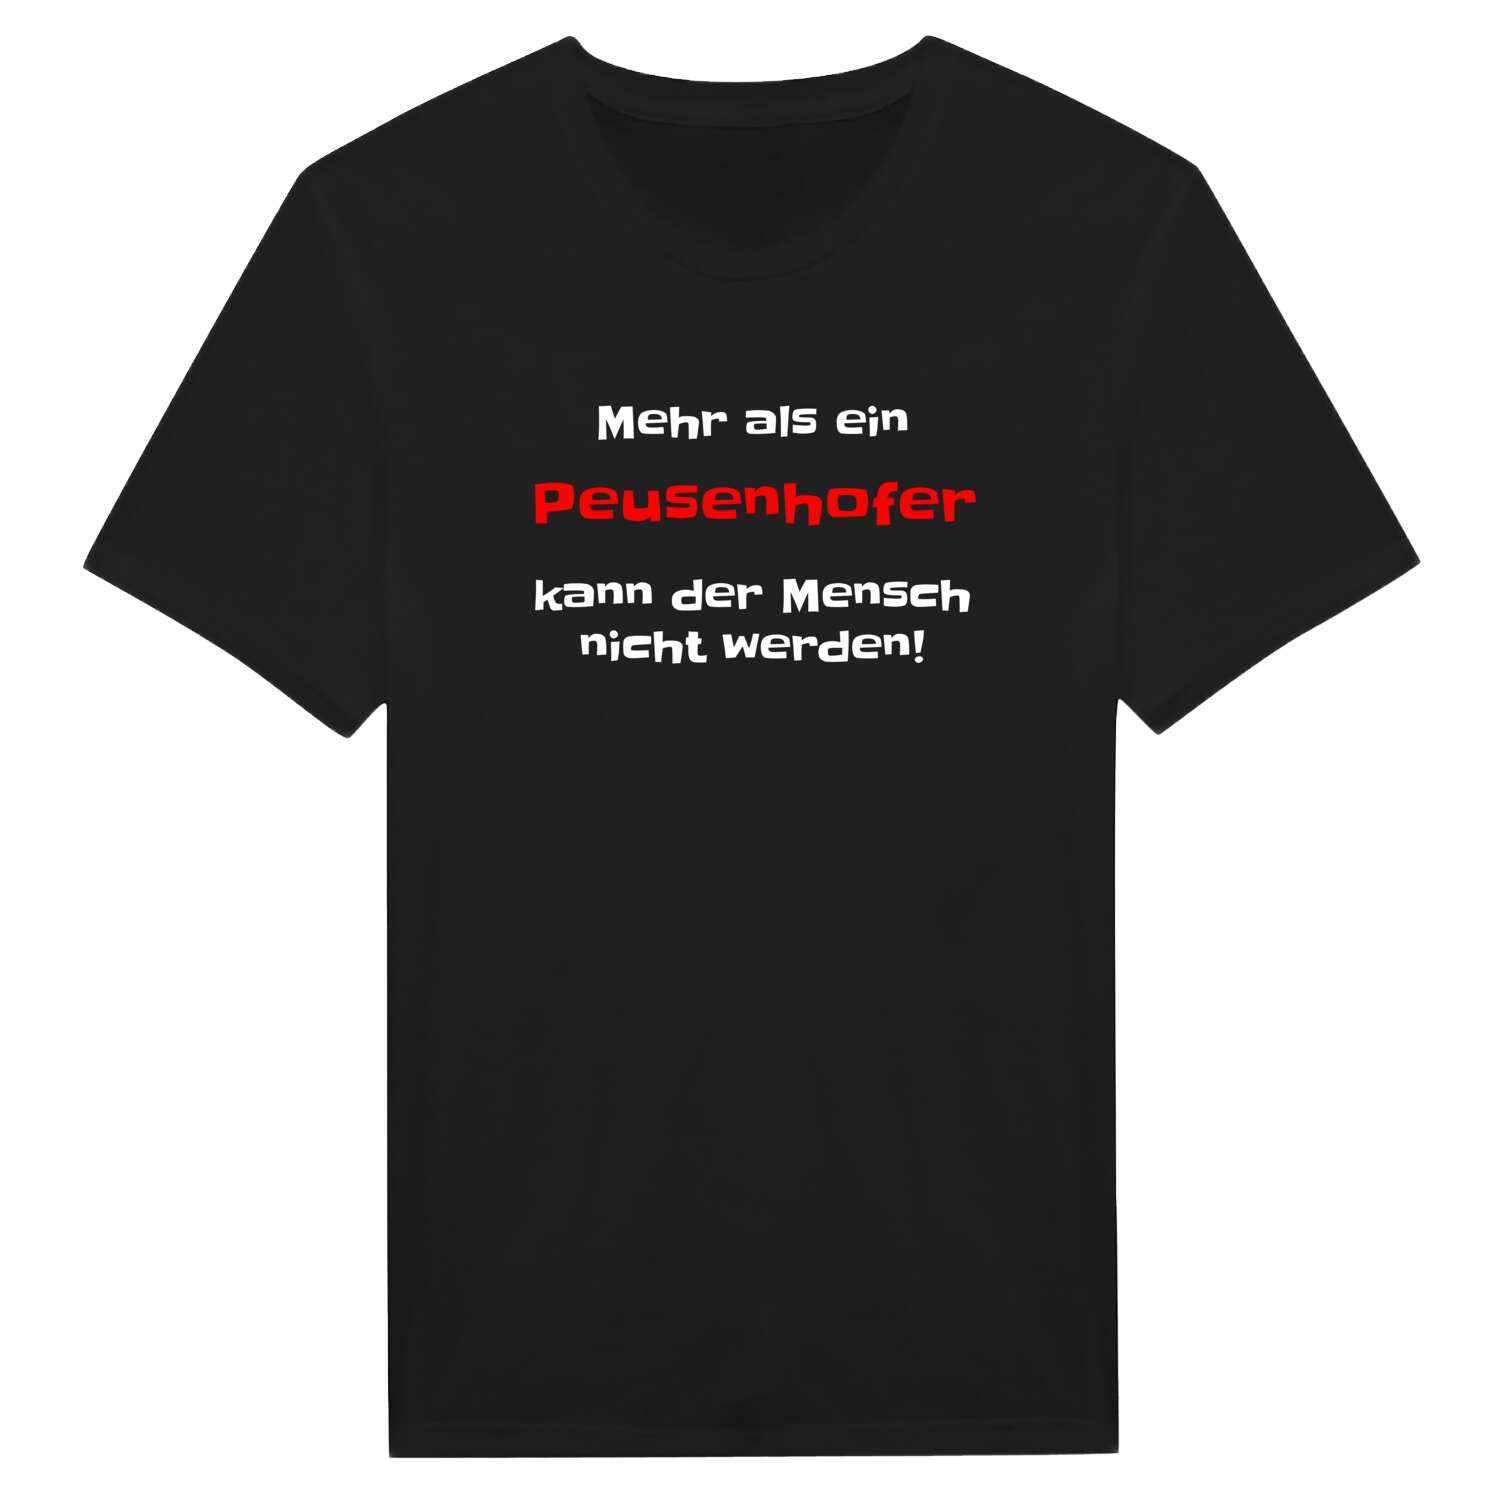 Peusenhof T-Shirt »Mehr als ein«